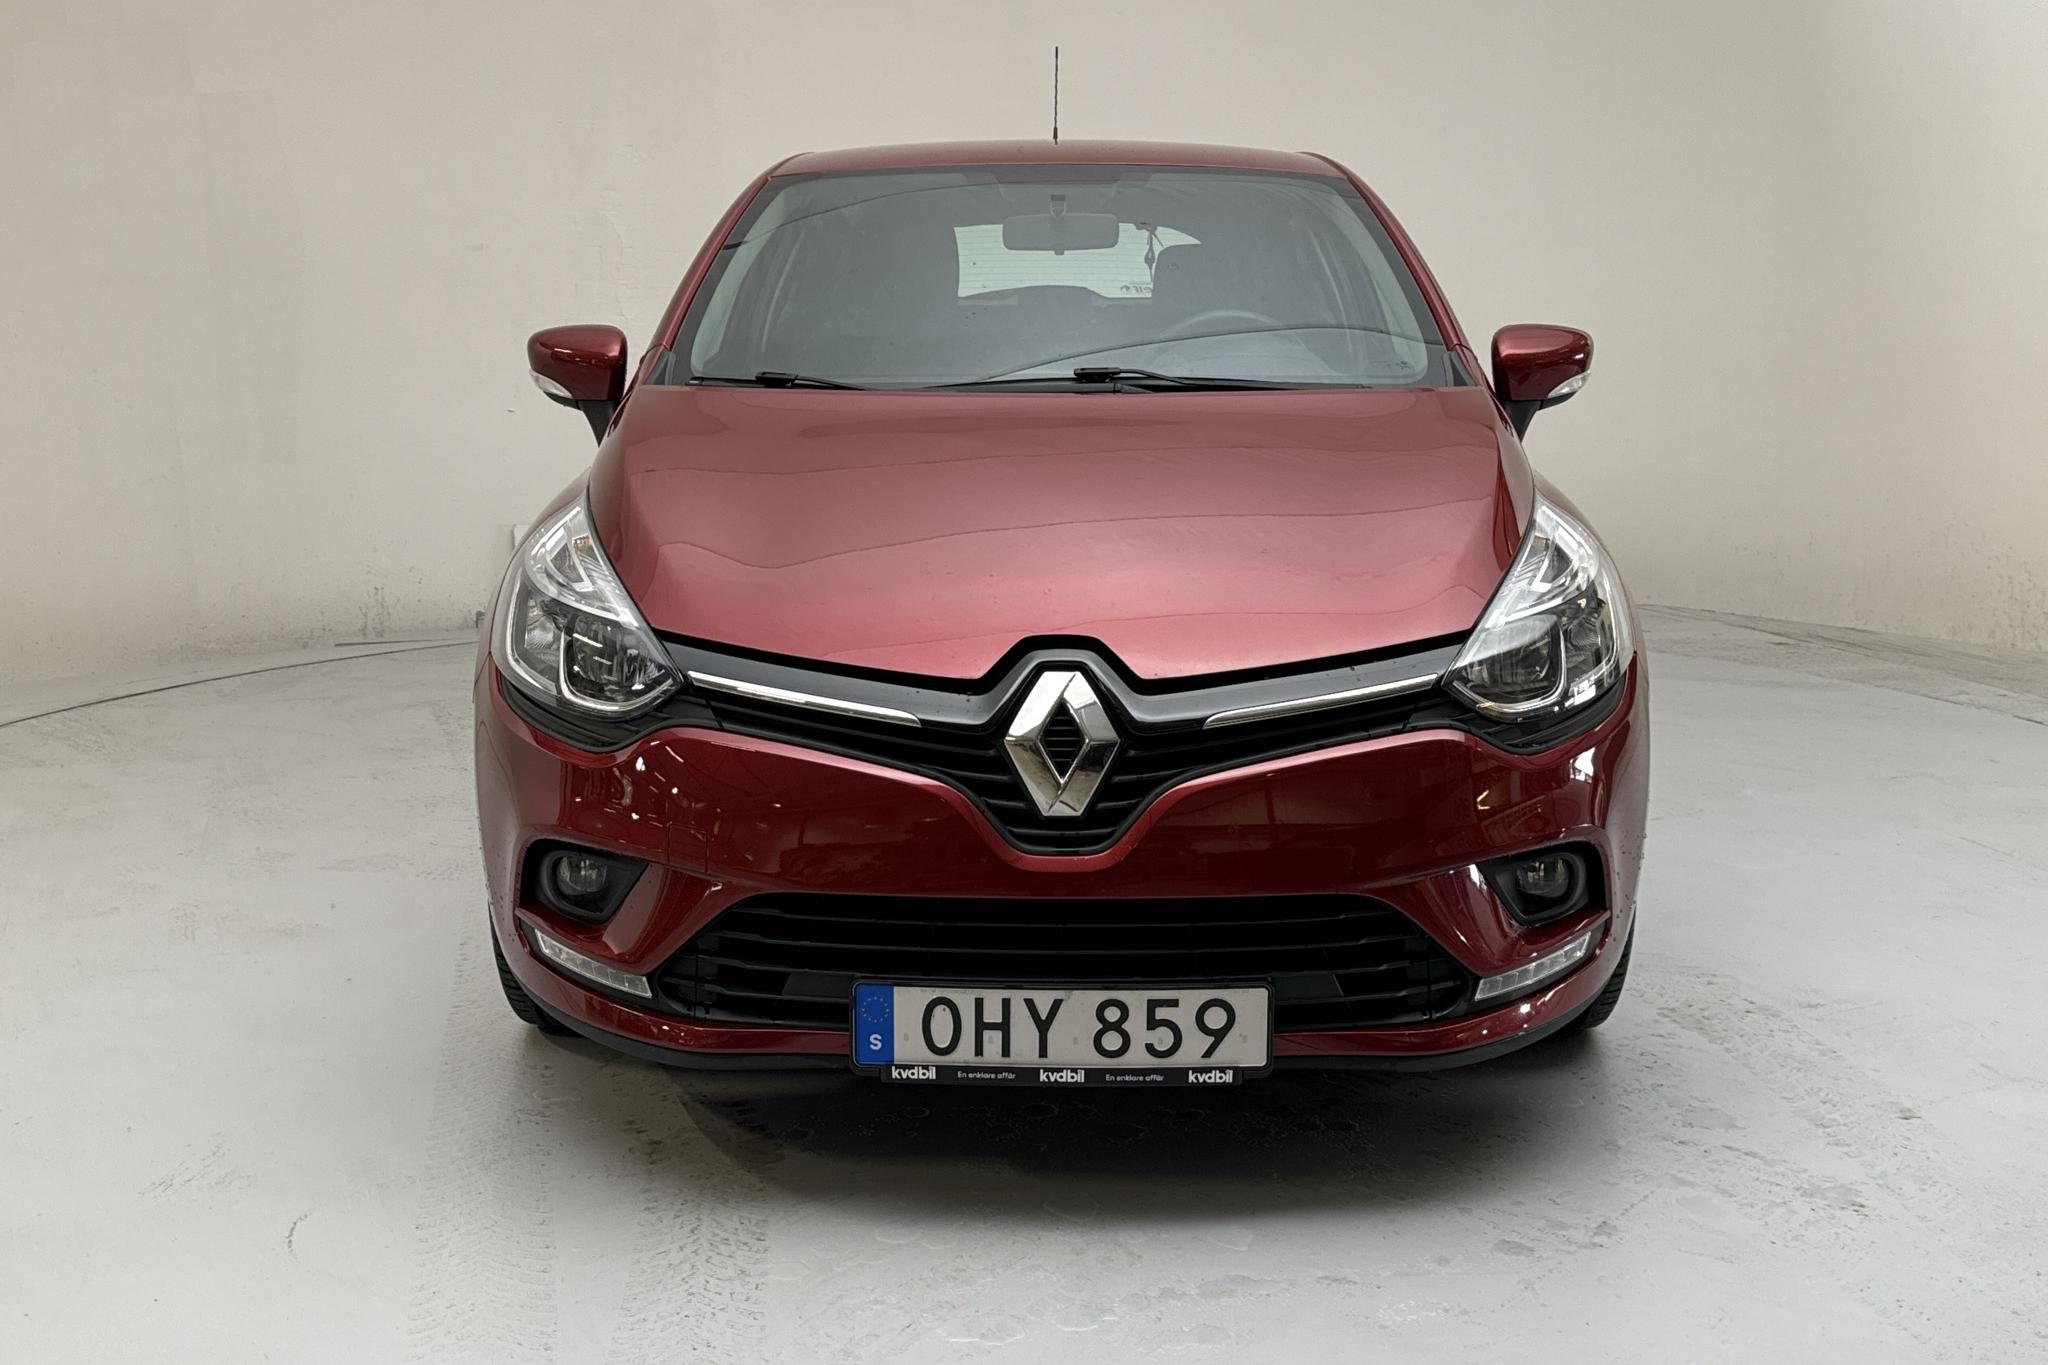 Renault Clio IV 1.2 16V 5dr (75hk) - 29 480 km - Manual - Dark Red - 2017